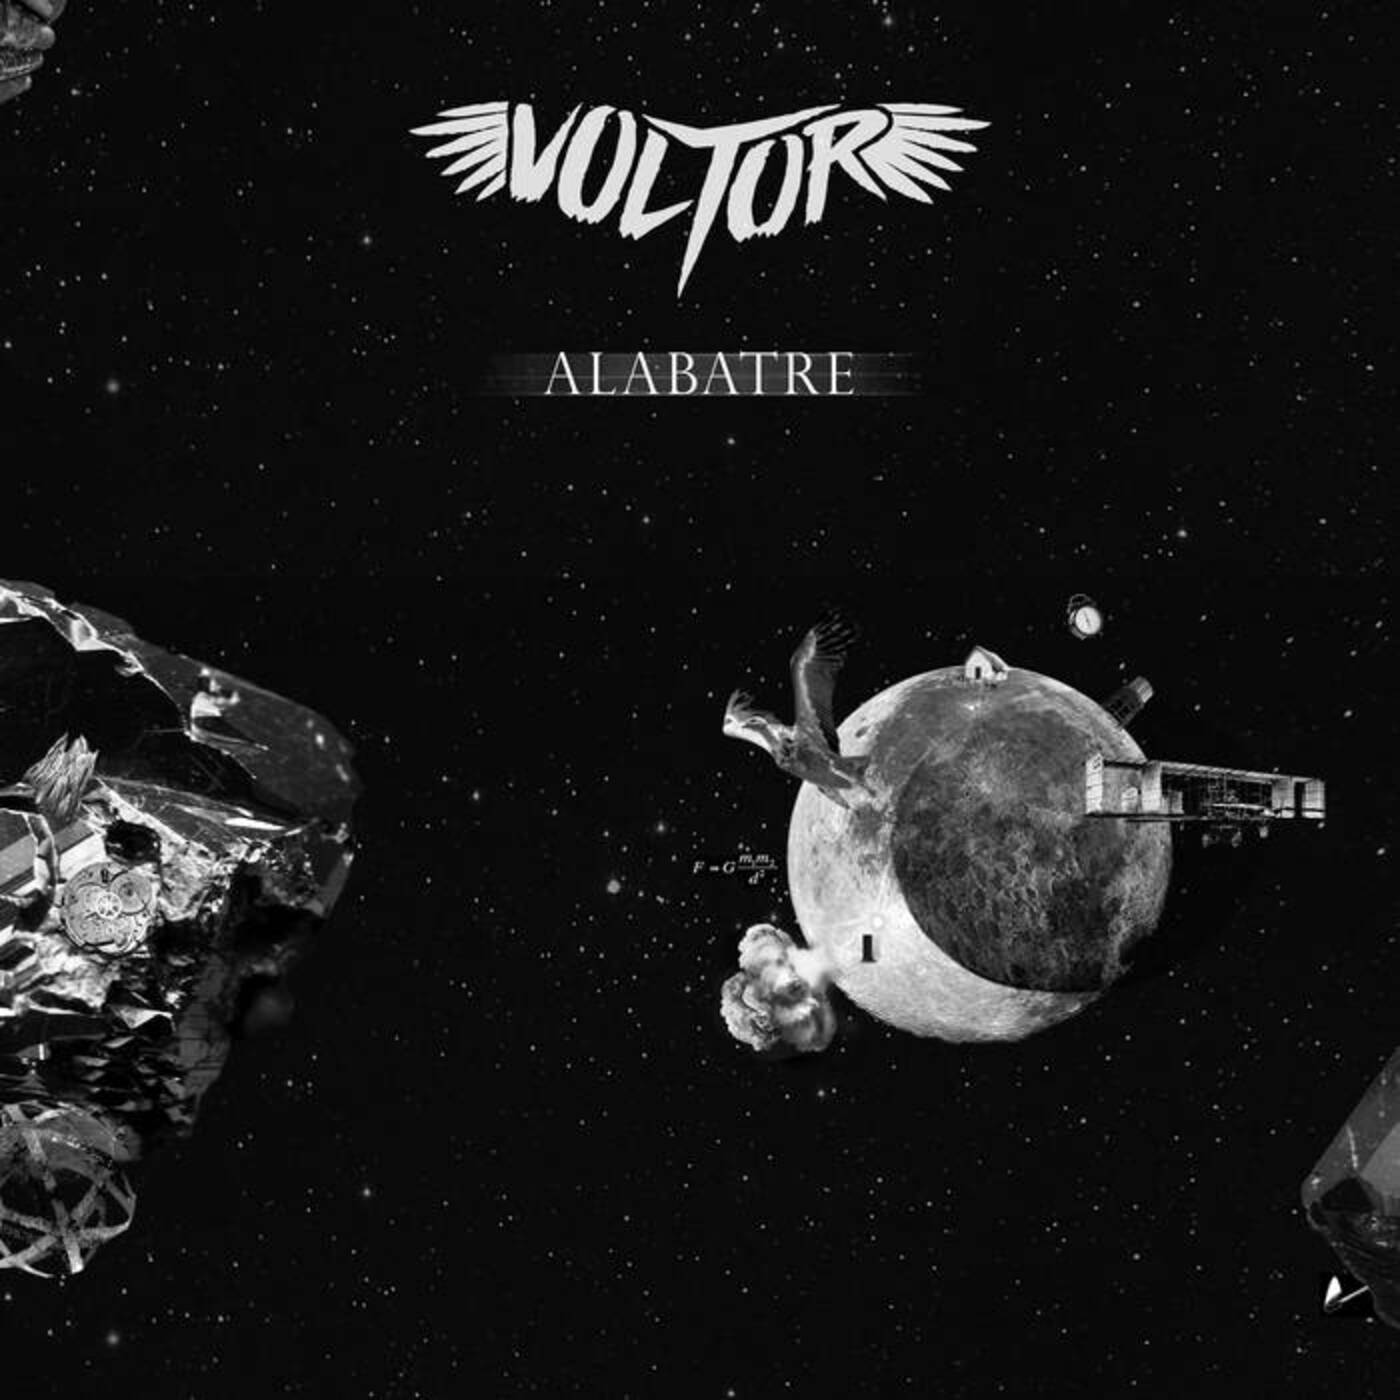 Voltor - Alabatre | musica en valencià